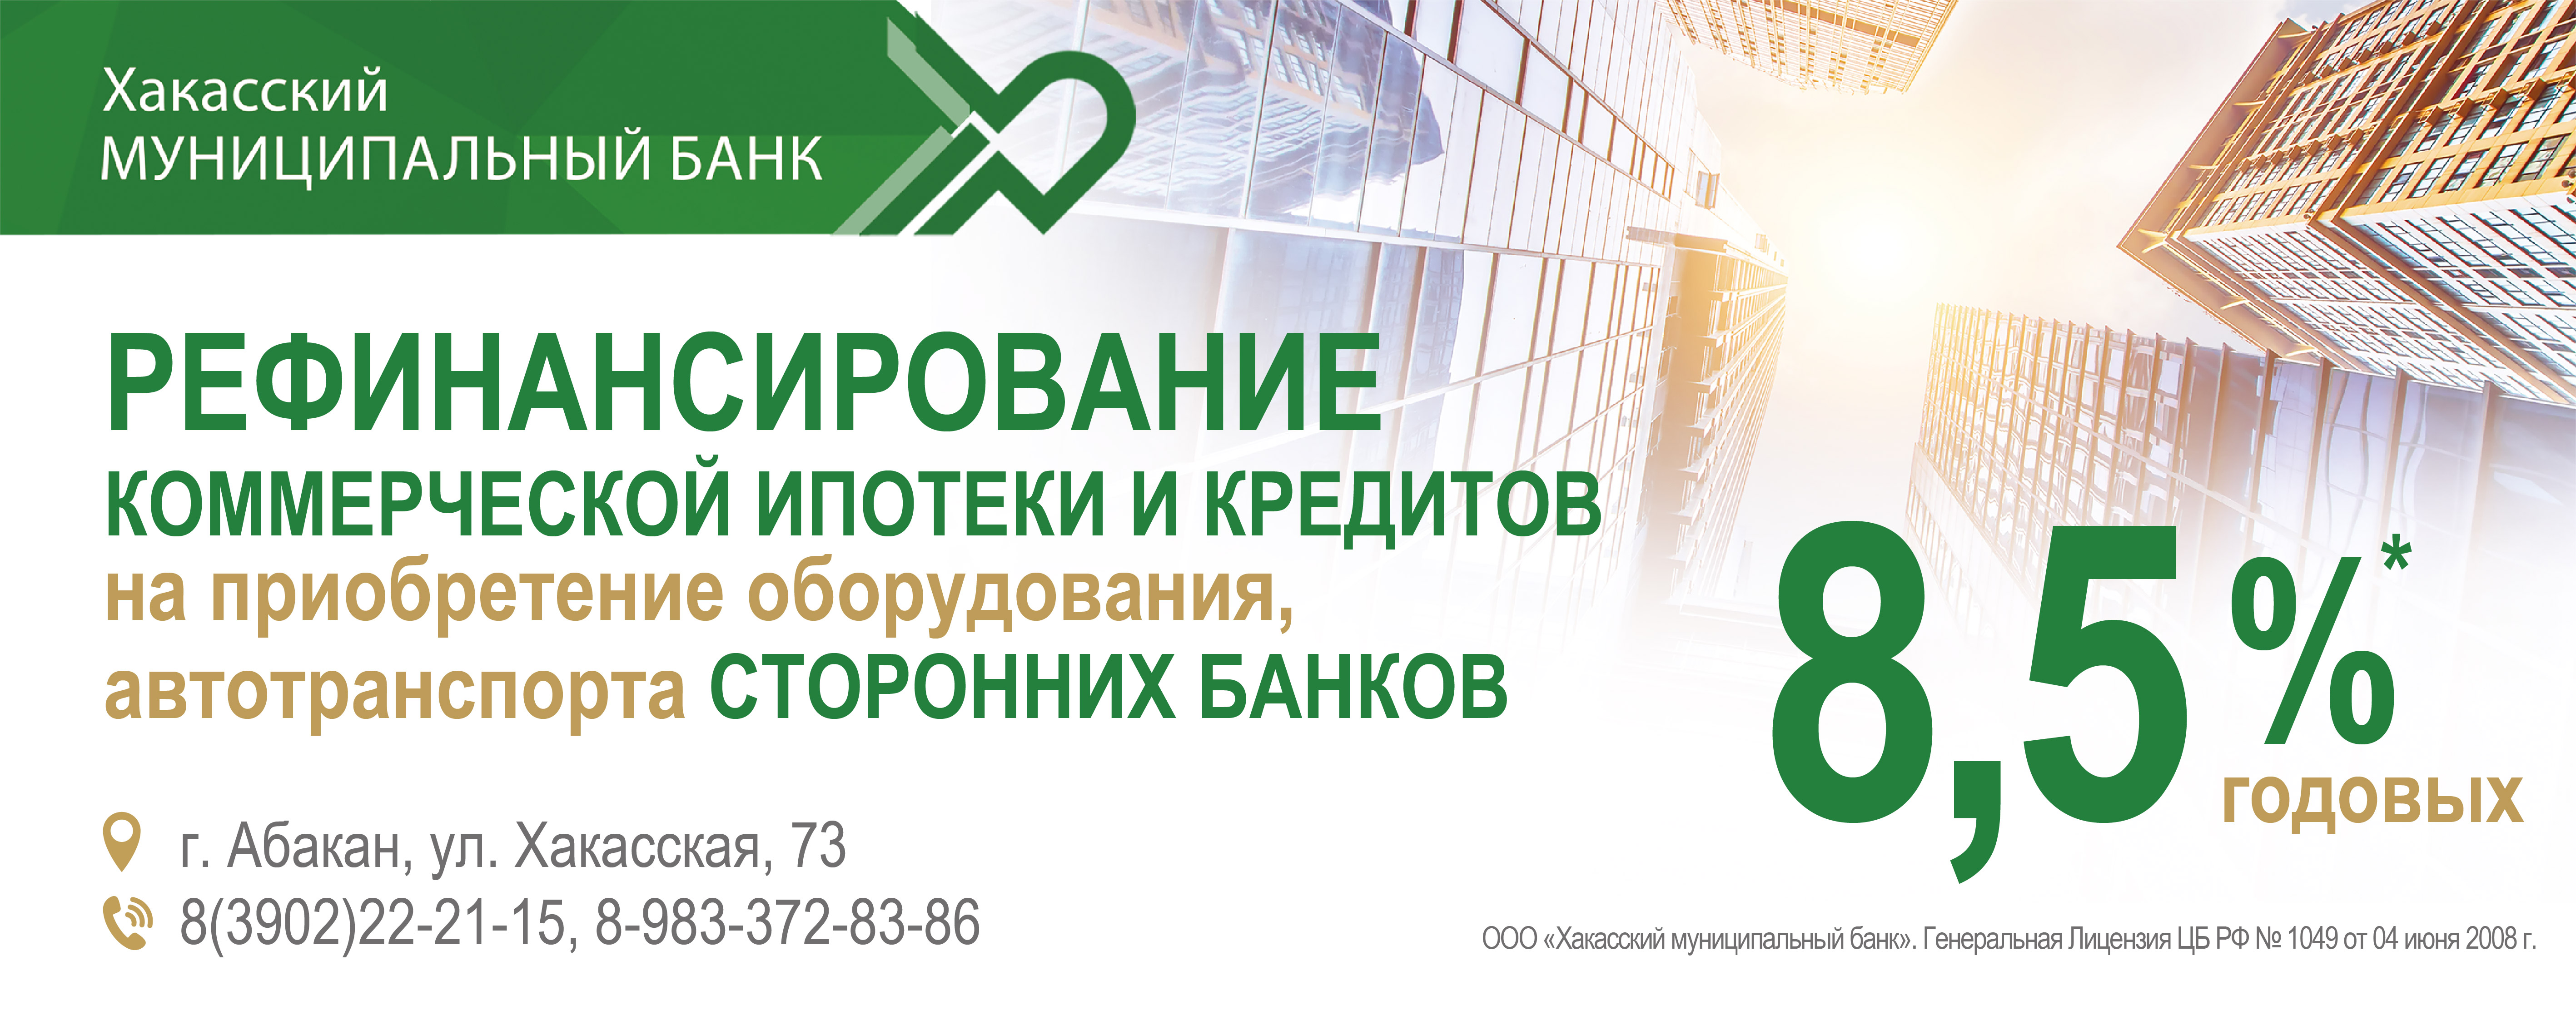 кредитные карты красноярск онлайн заявка онлайн займ честное слово личный кабинет